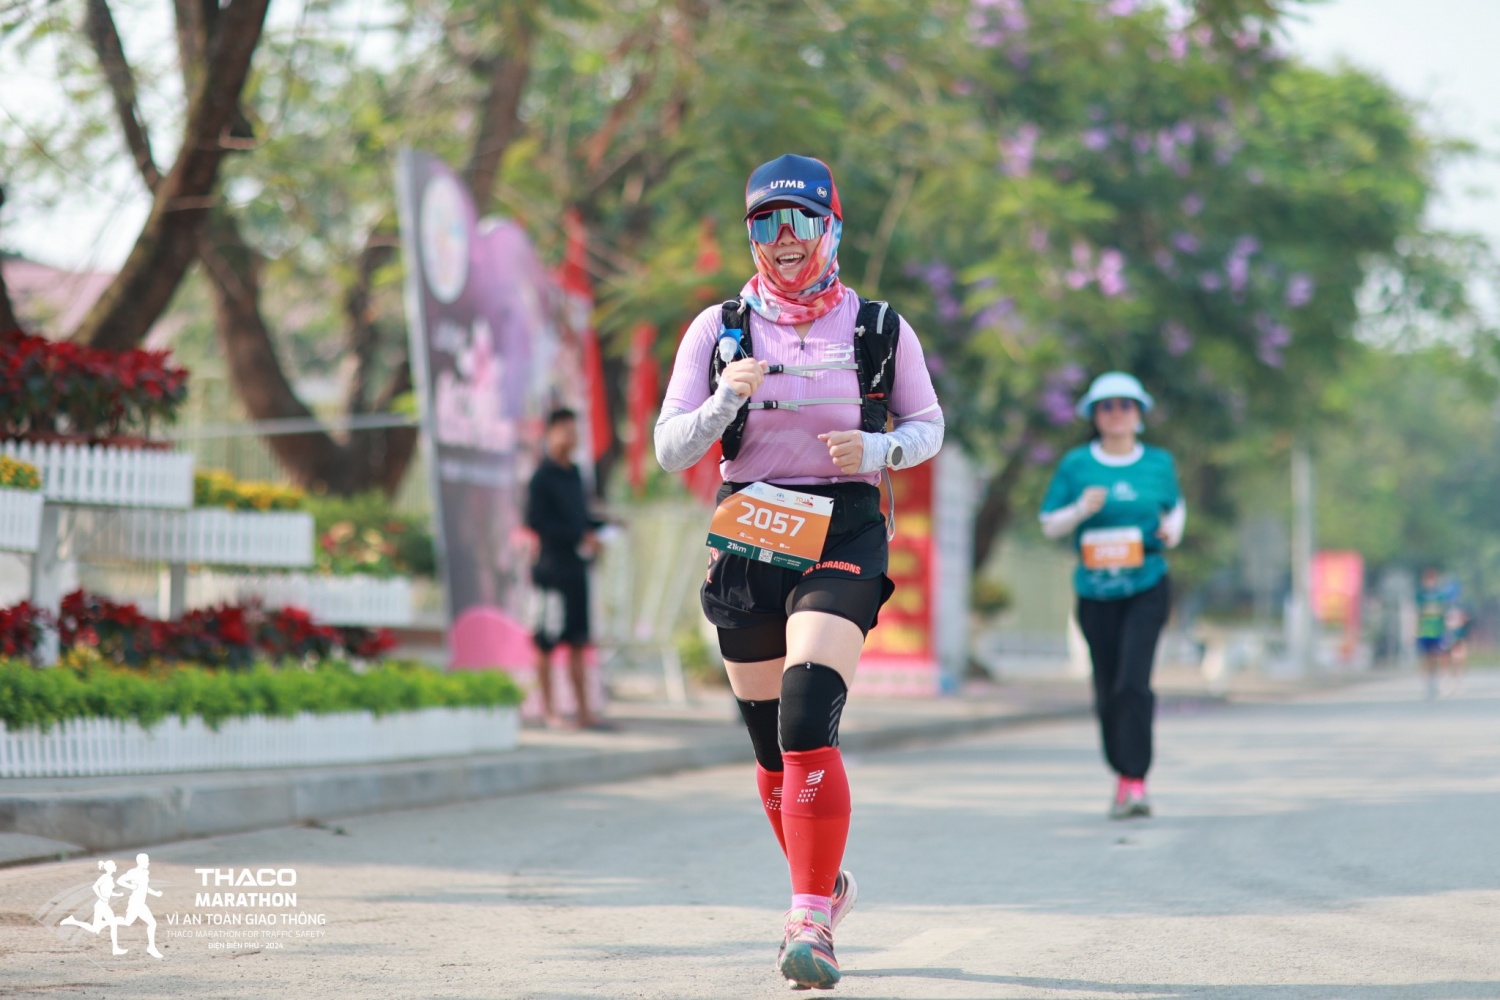 Petrovietnam đồng hành cùng giải chạy THACO Marathon Vì an toàn giao thông   Điện Biên Phủ 2024